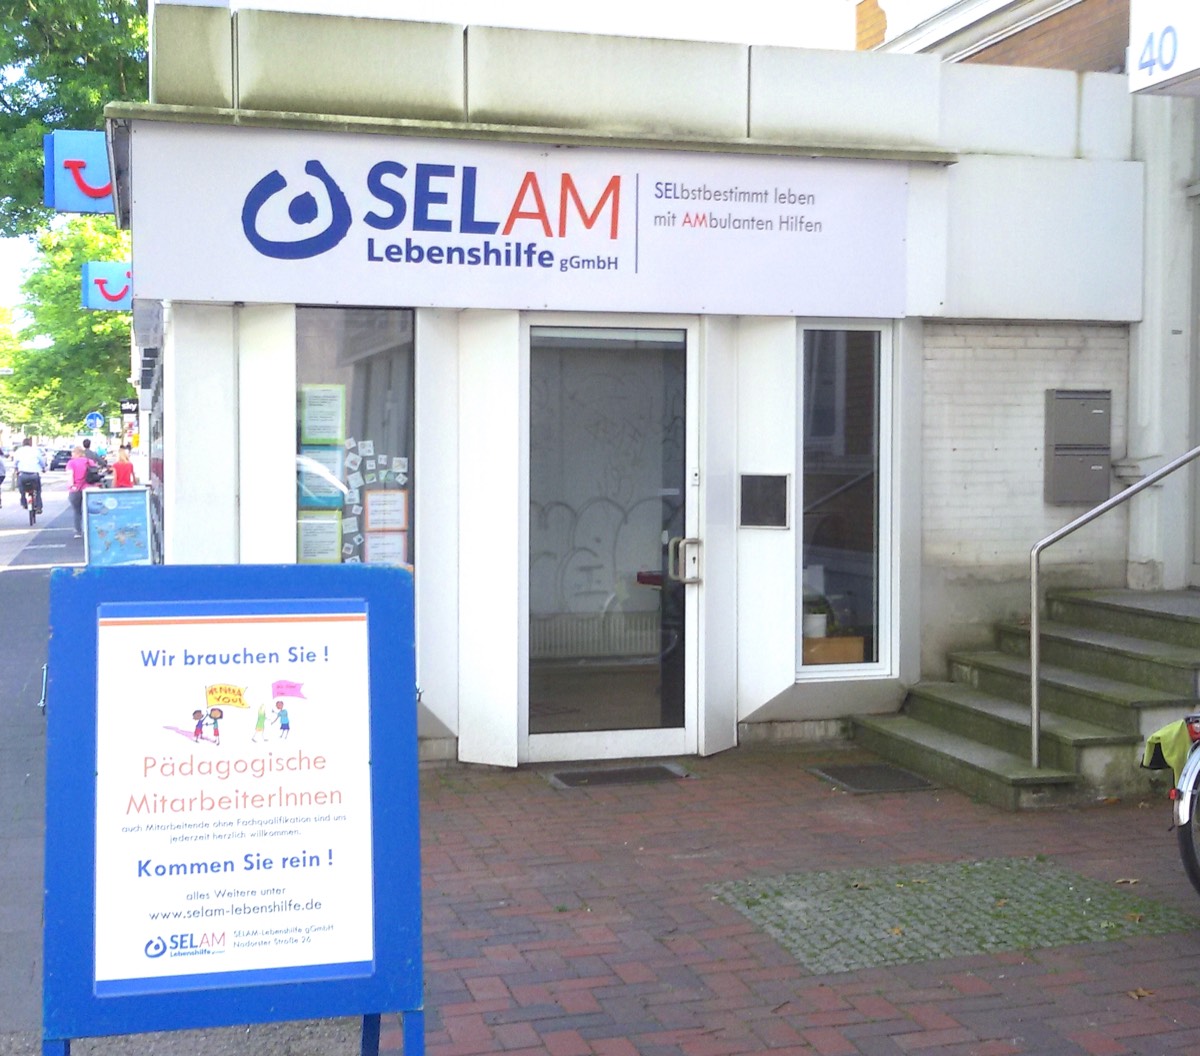 Auf dem 2. Bild sieht man das BeratungsbÃ¼ro der SELAM-Lebenshilfe, welches inzwischen umgezogen ist.